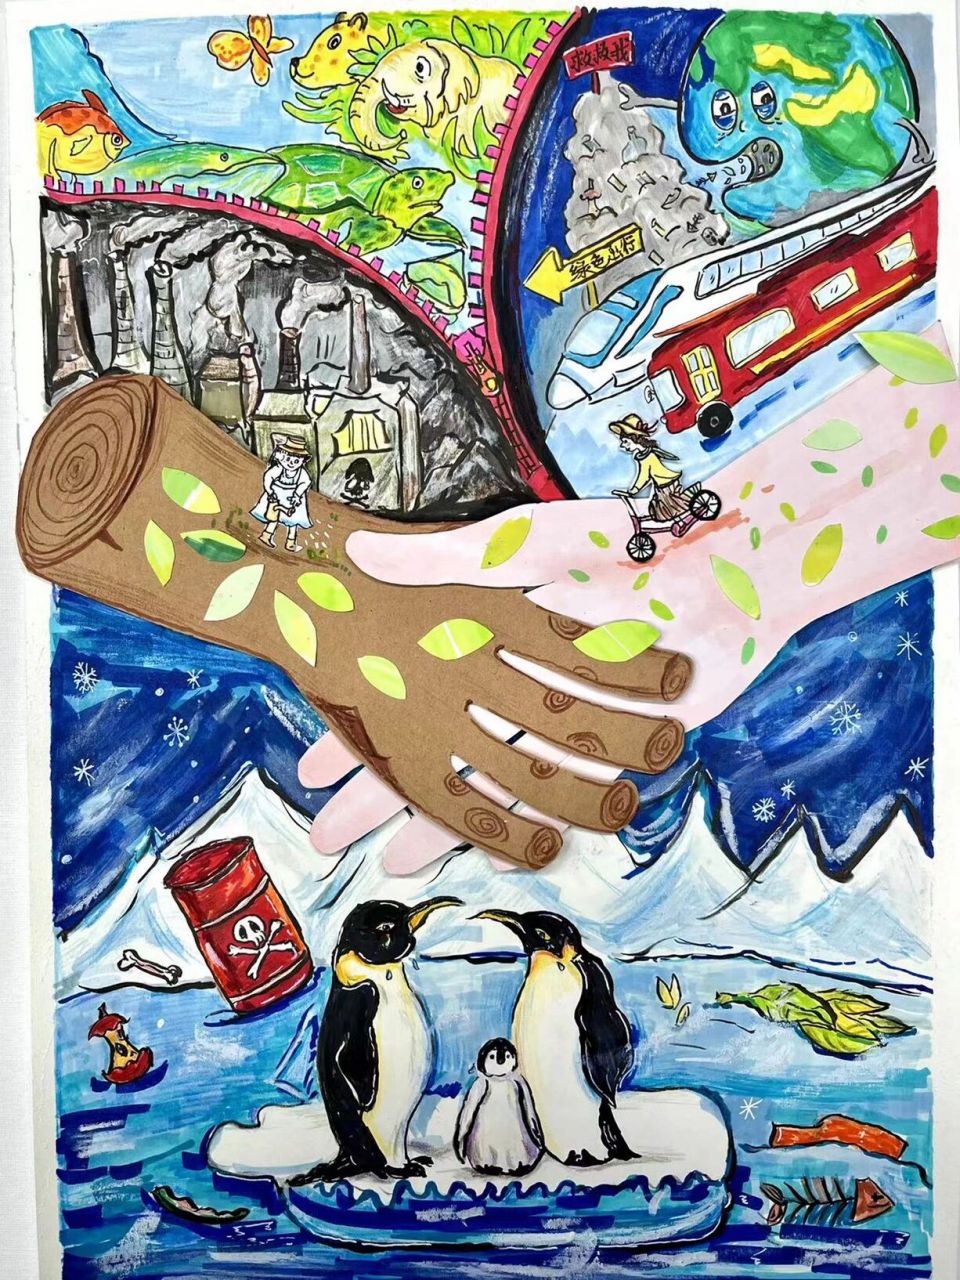 保护环境儿童画 参赛作品,爱护环境,保护动物绘画